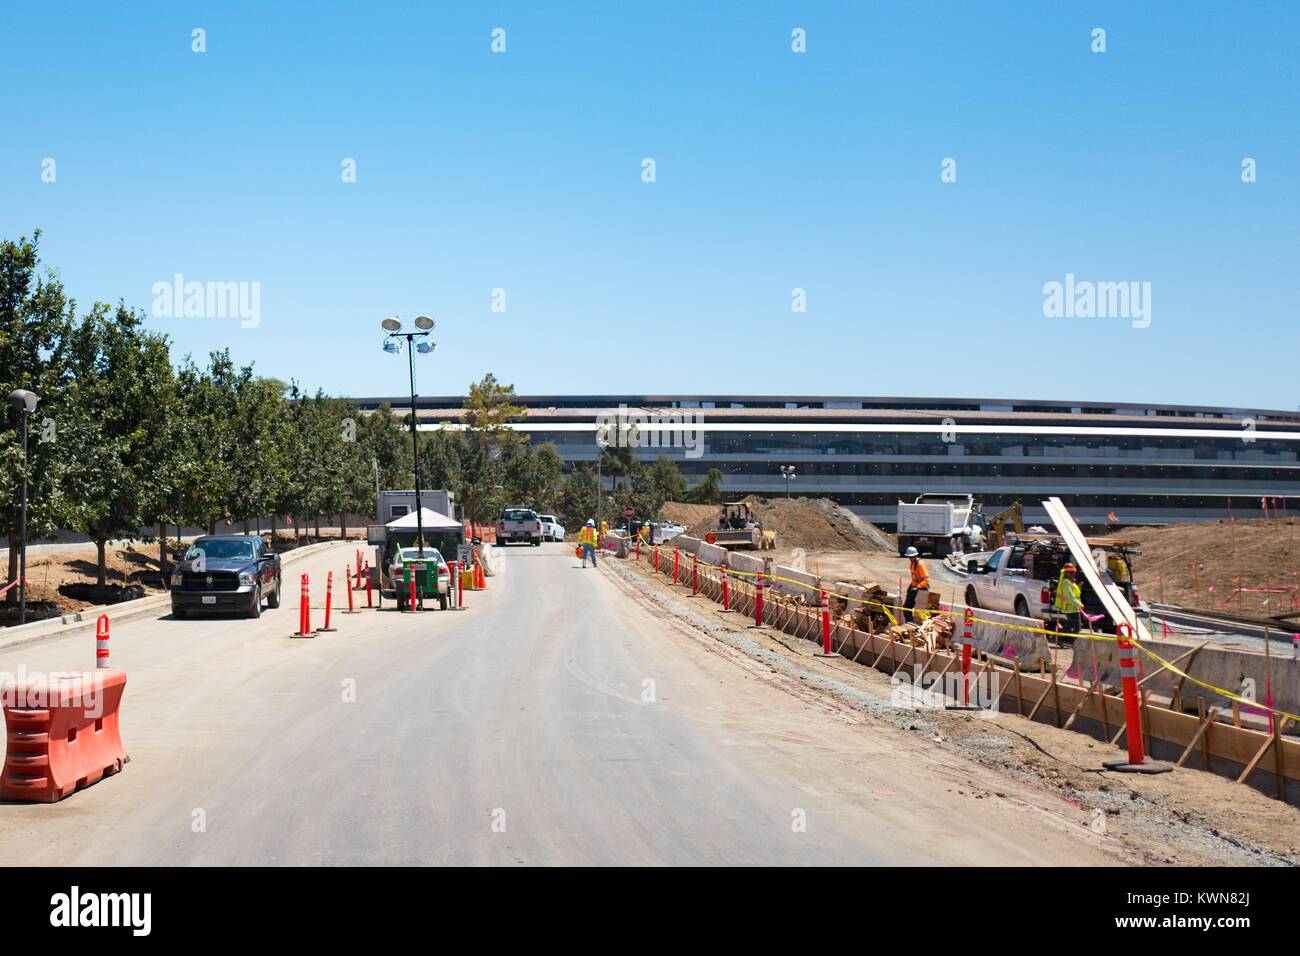 Bâtiment principal et du site de construction à l'Apple Park, connu familièrement comme "le vaisseau spatial", le nouveau quartier général d'Apple Inc dans la Silicon Valley ville de Cupertino, Californie, 25 juillet 2017. Banque D'Images